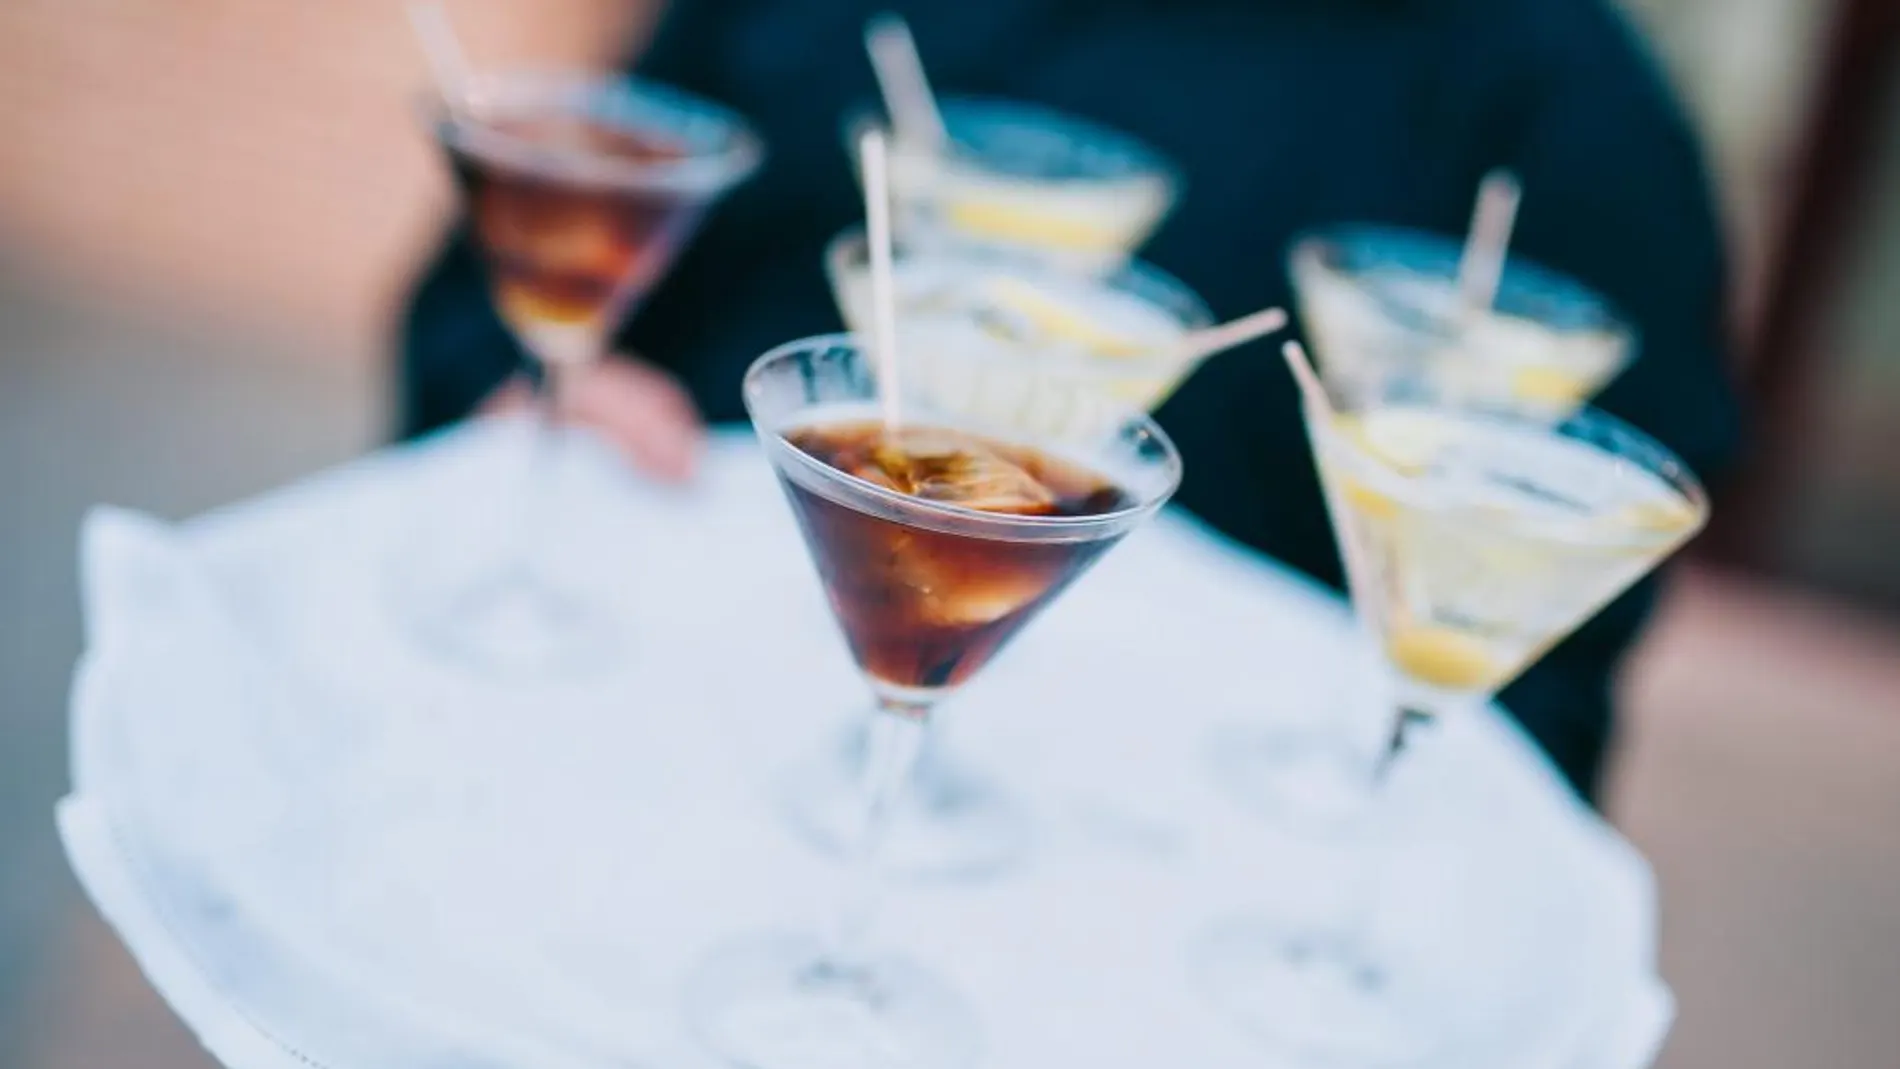 Los «bartenders» plasman su estilo más creativo durante el maridaje como elemento intangible del patrimonio culinario